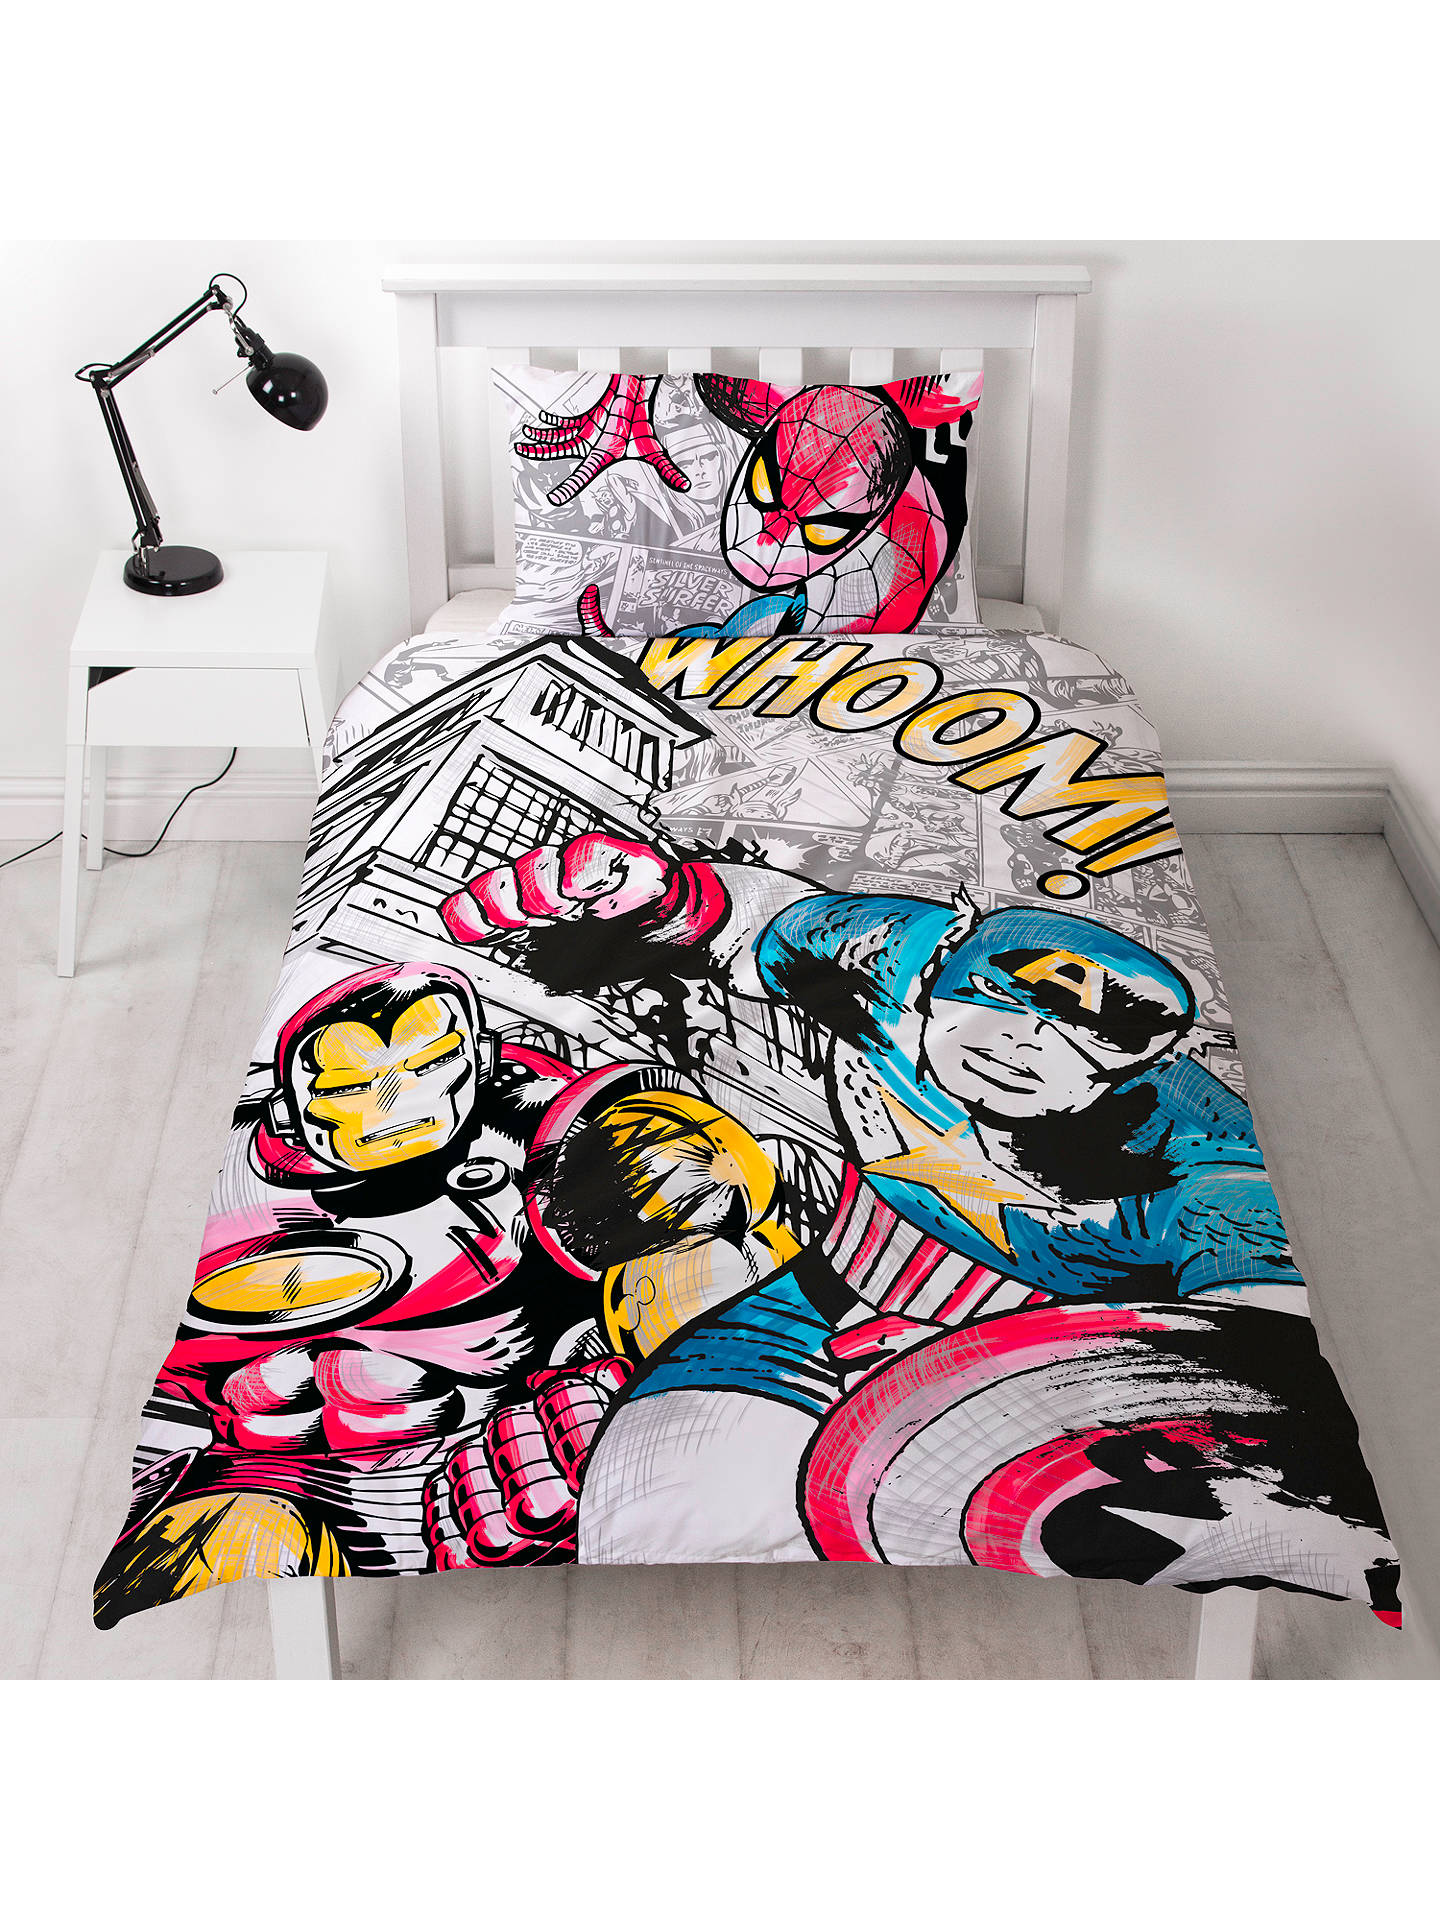 Marvel Sketchy Duvet Cover And Pillowcase Set Single At John